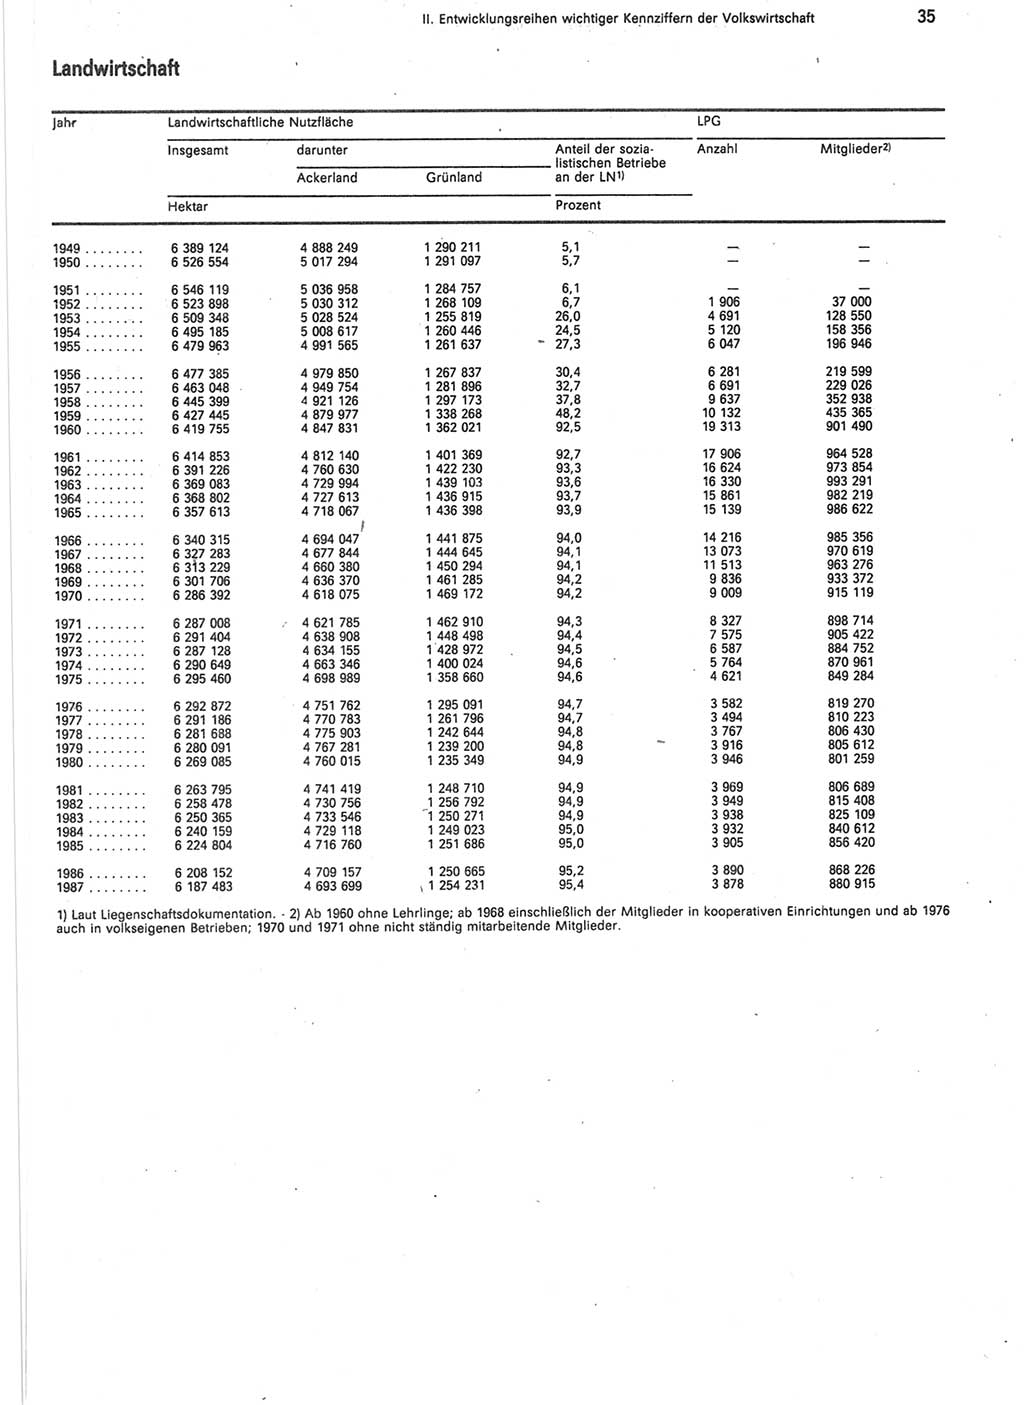 Statistisches Jahrbuch der Deutschen Demokratischen Republik (DDR) 1988, Seite 35 (Stat. Jb. DDR 1988, S. 35)